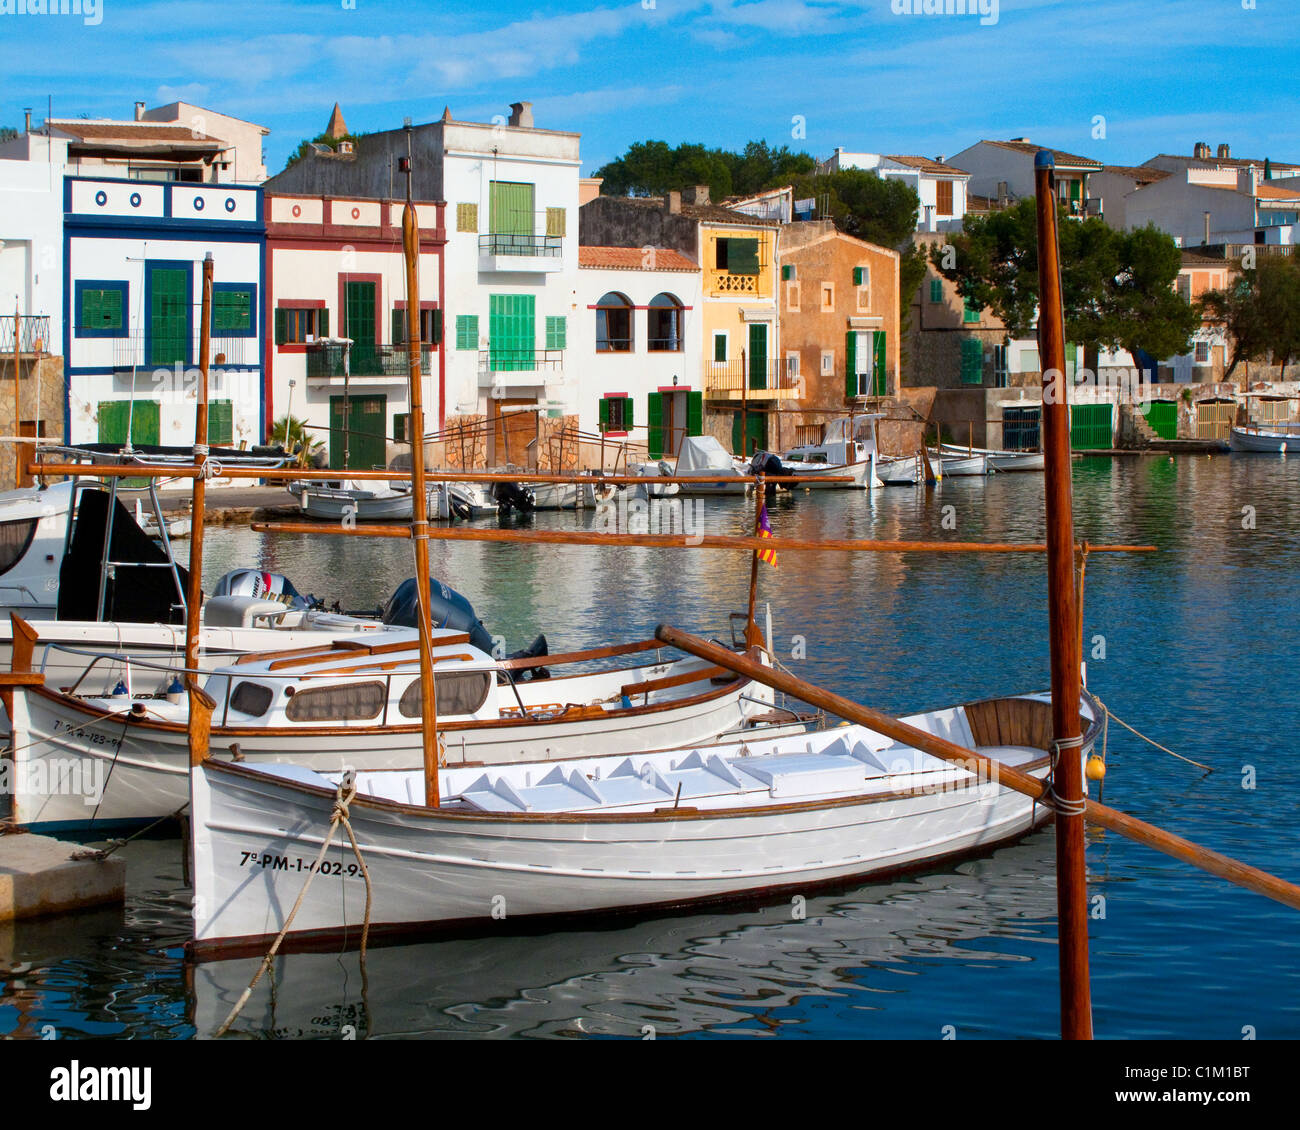 ES - MALLORCA: Old Fishing Village of Porto Colom Stock Photo